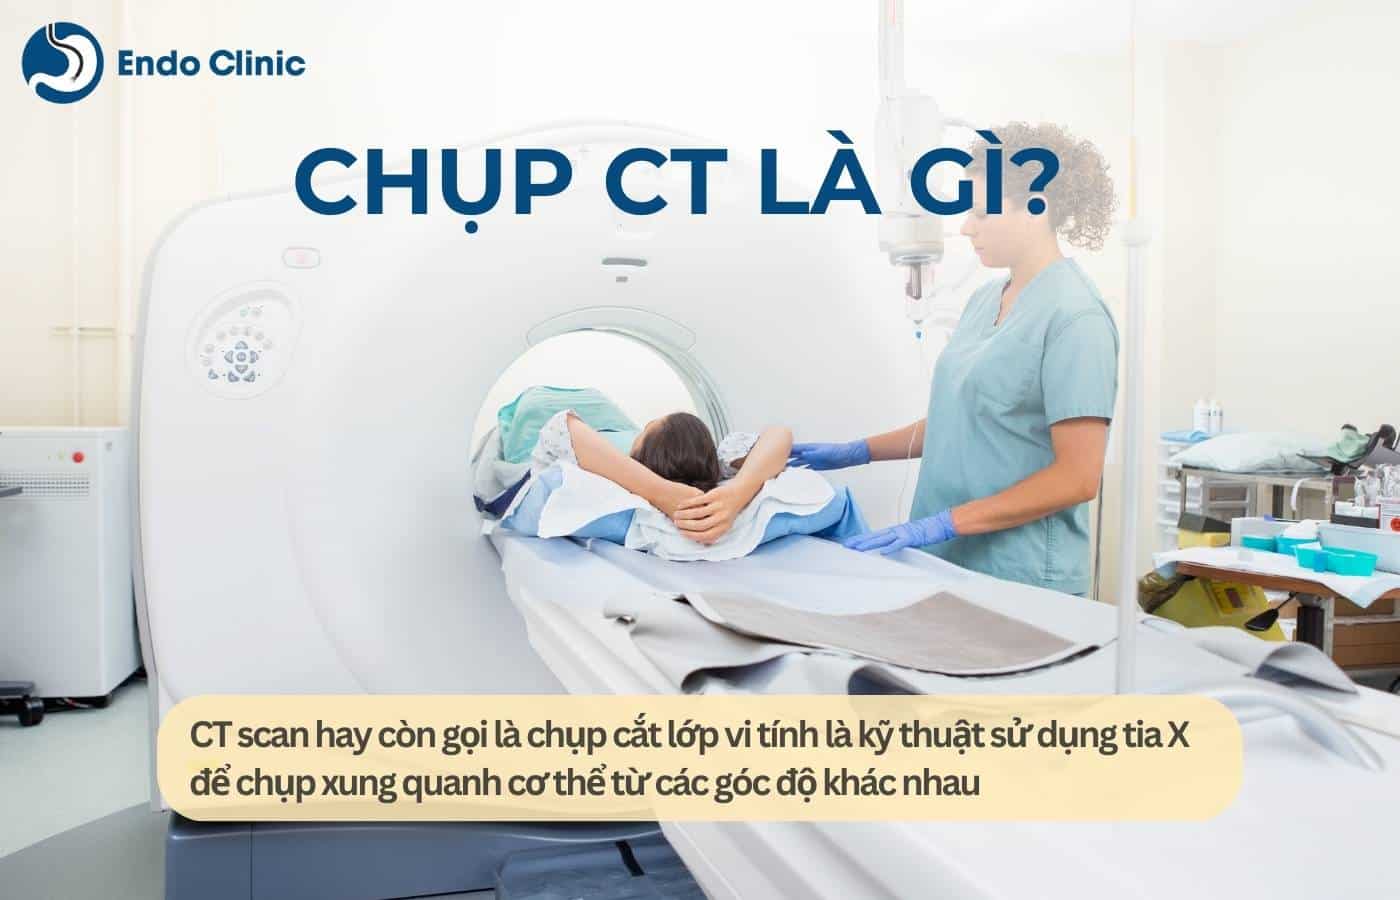 Chụp CT là gì?